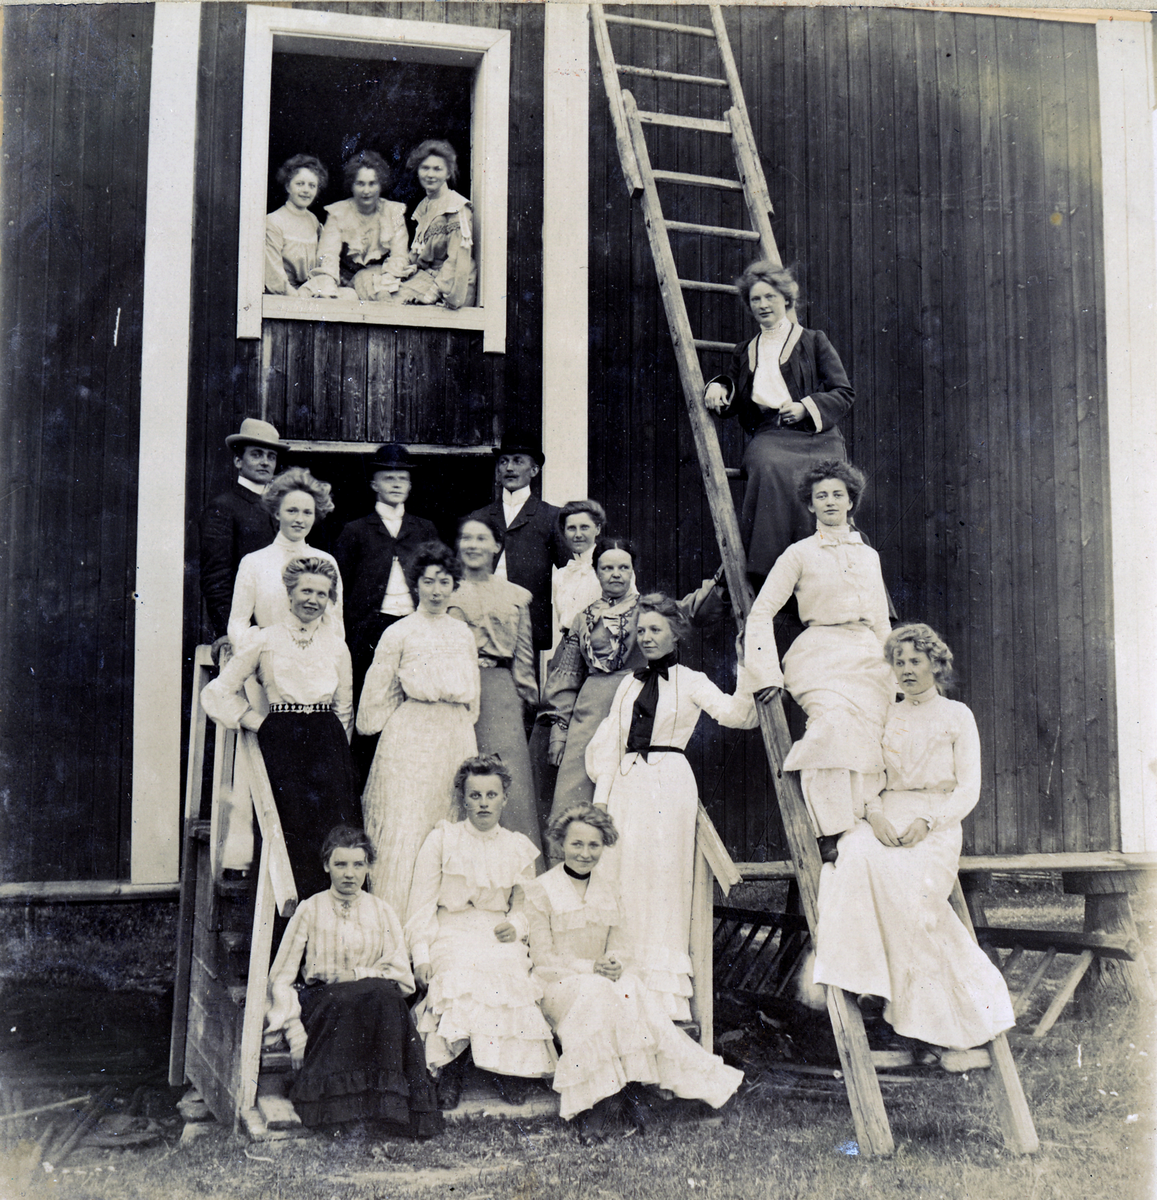 Gruppebilde, kvinner og menn i prestegaarden  påHov, Kongsvinger 1904.
Bilde er fra fotoalbum GM.036887.